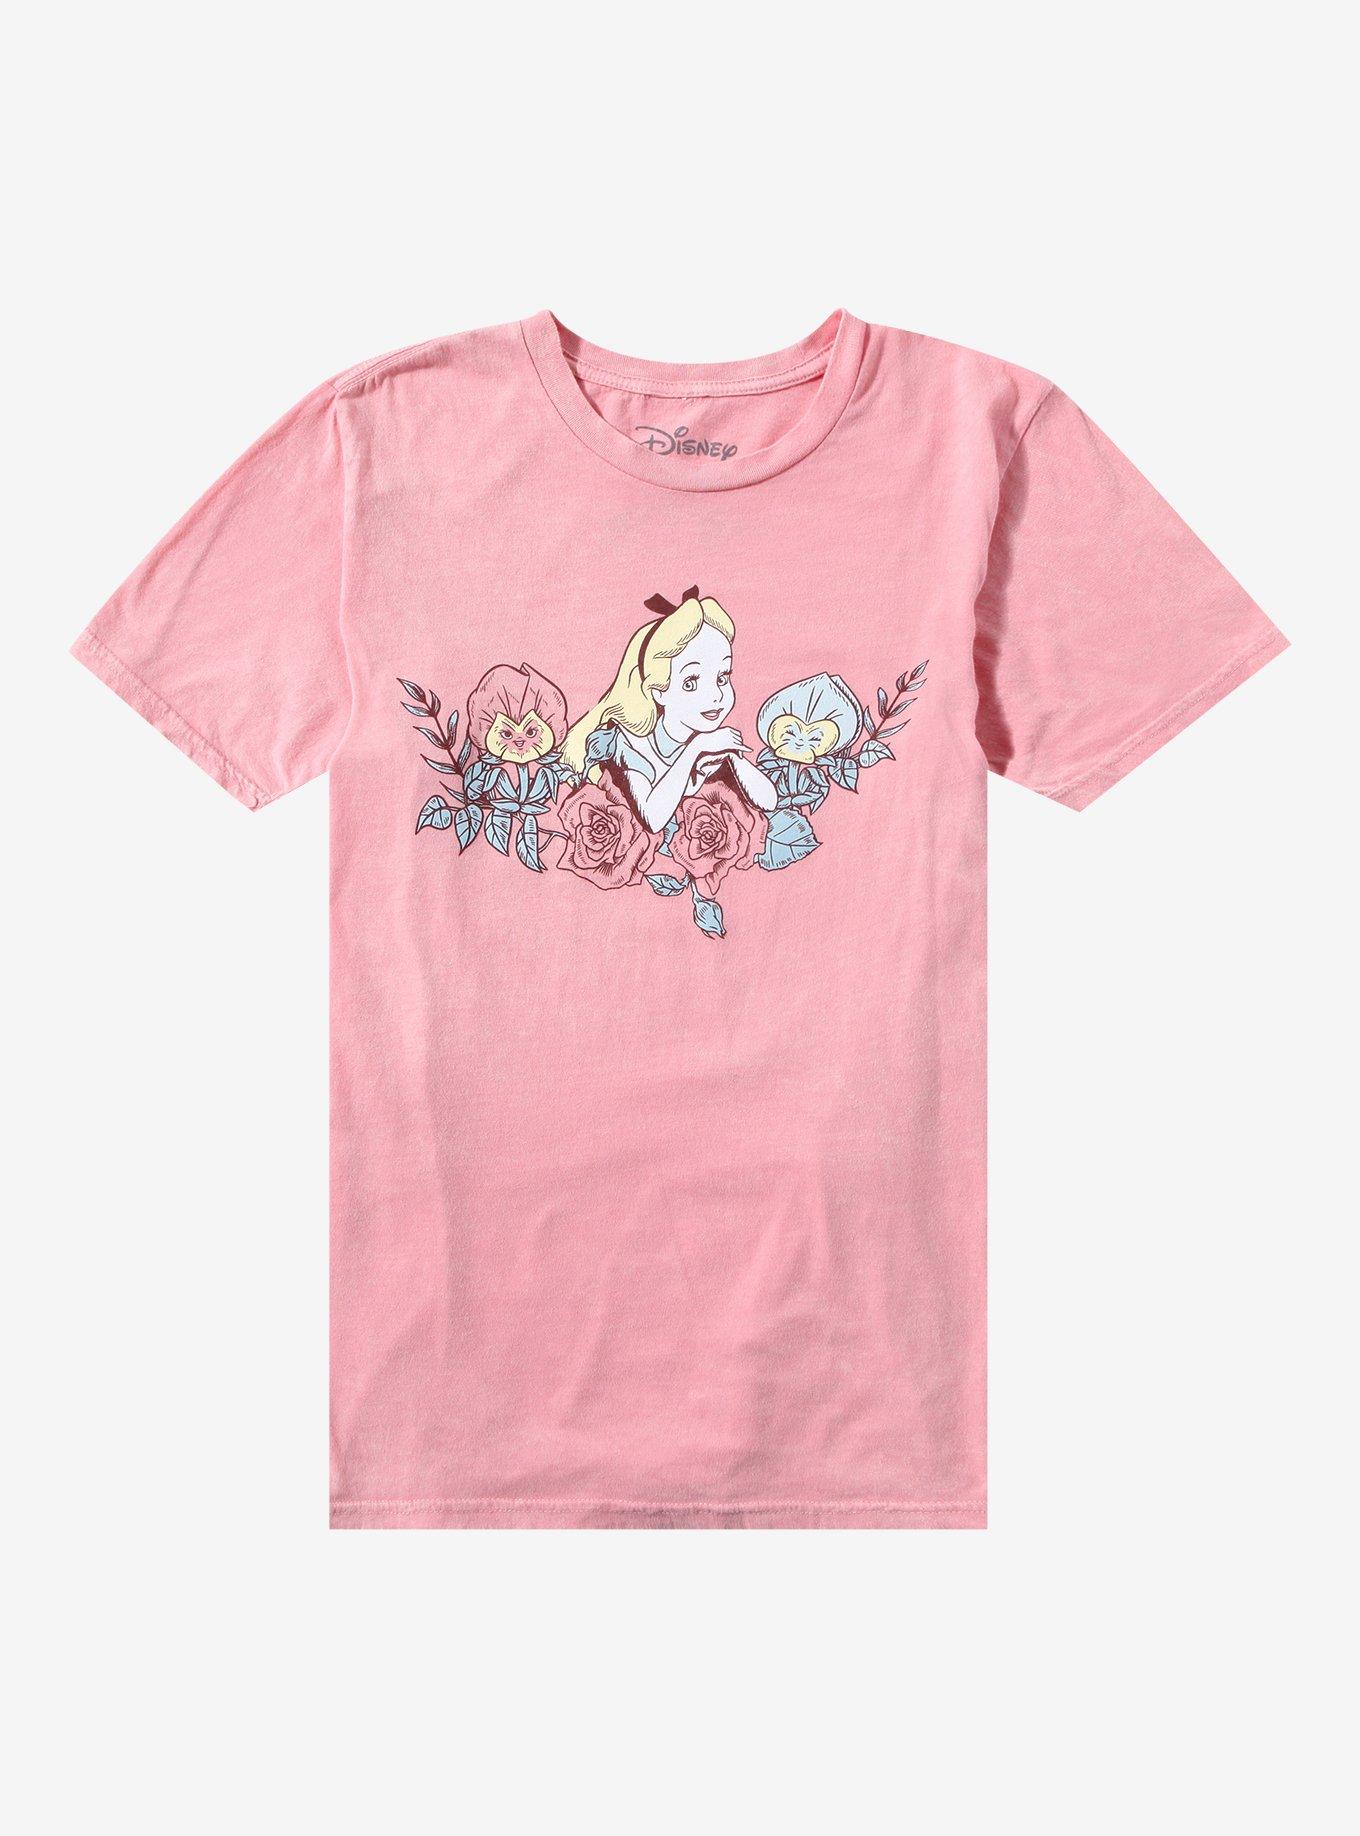 Disney Alice In Wonderland Pastel Floral Boyfriend Fit Girls T-Shirt